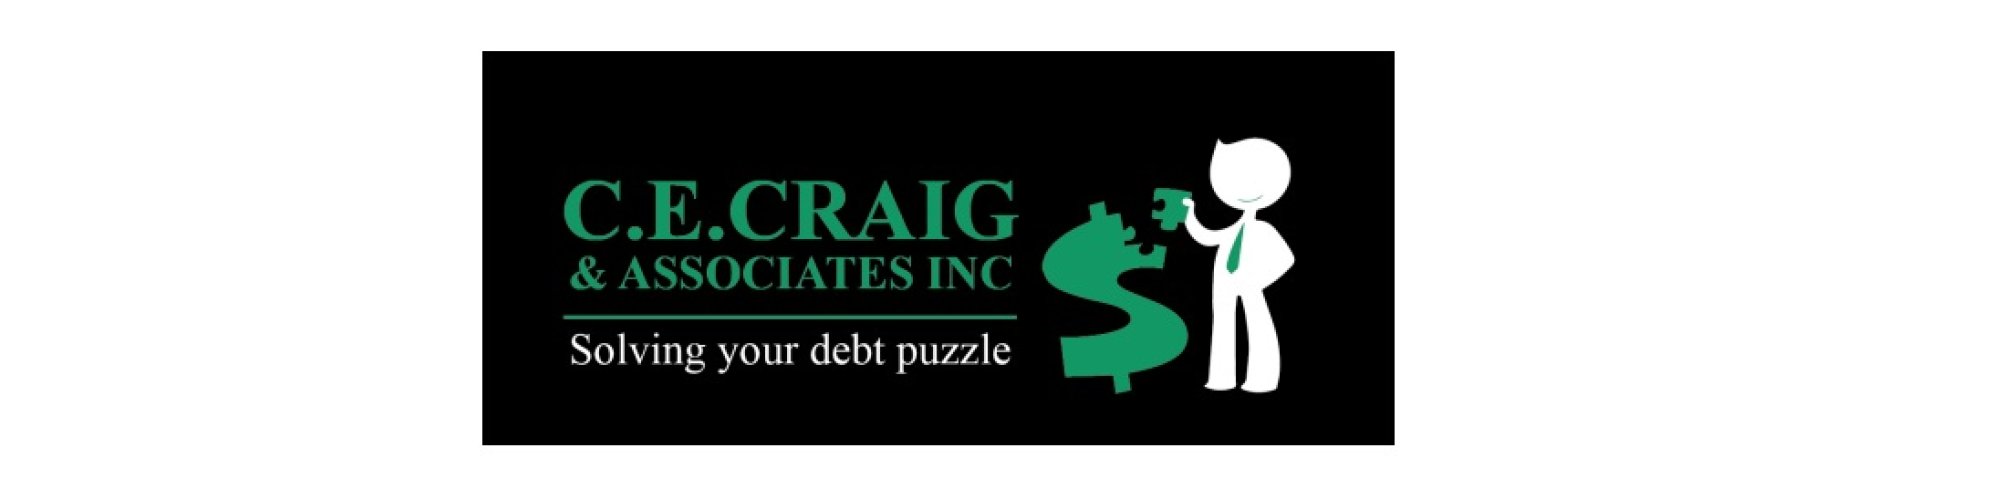 C.E. Craig and Associates Inc.